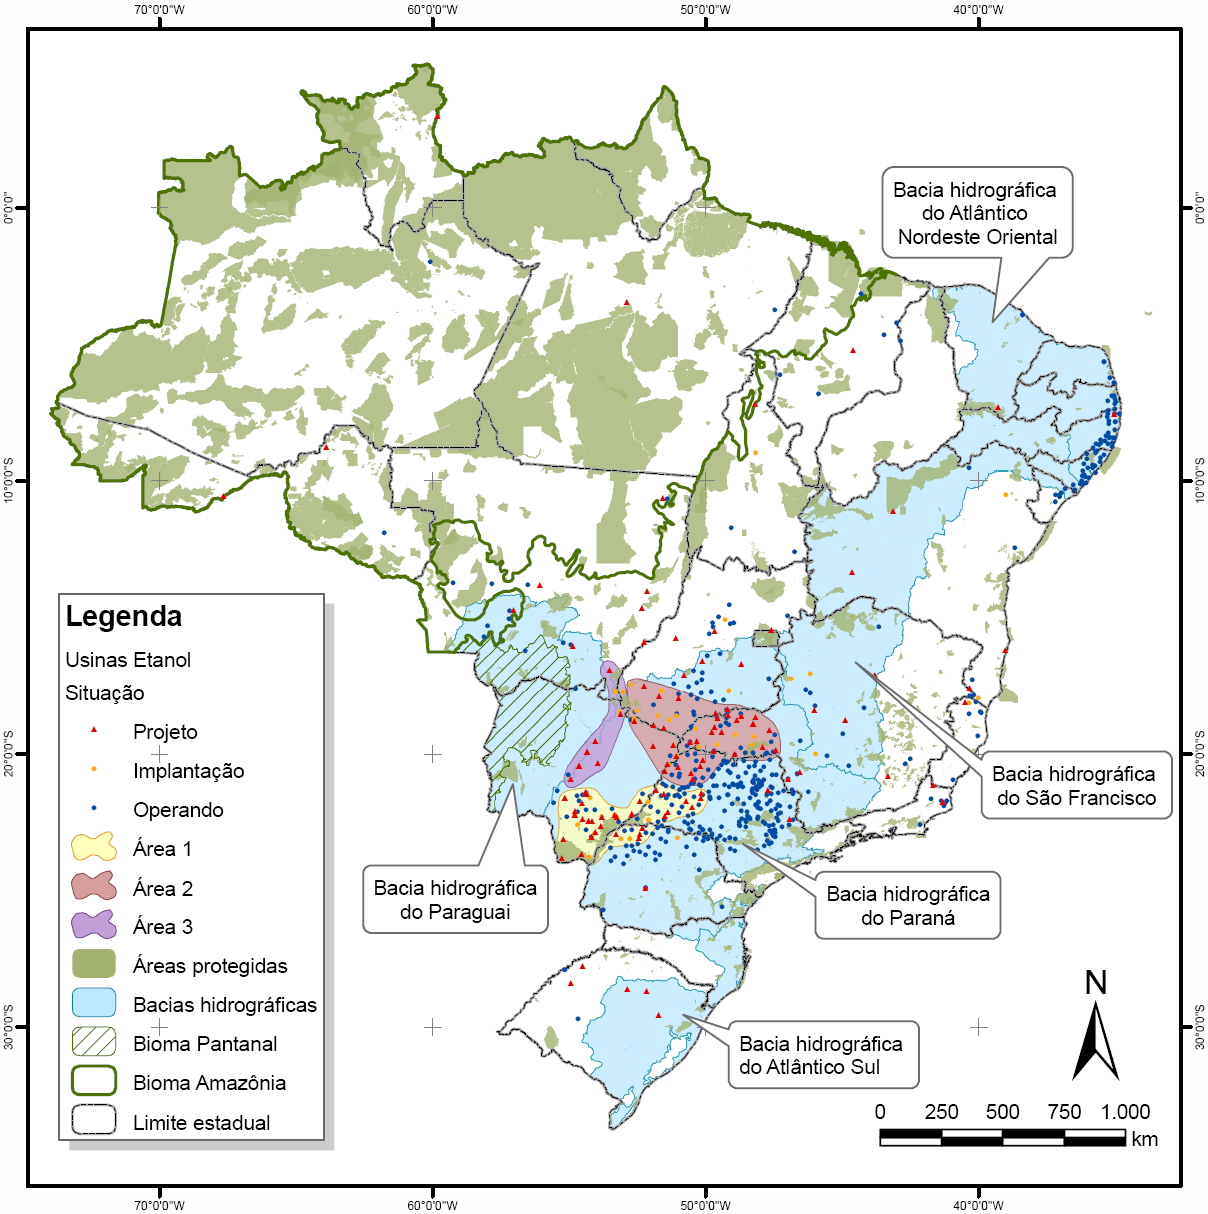 reduzida, drenadas com para o Pantanal predomínio e de de recarga agropecuária do aquífero Área Guarani) Área 1